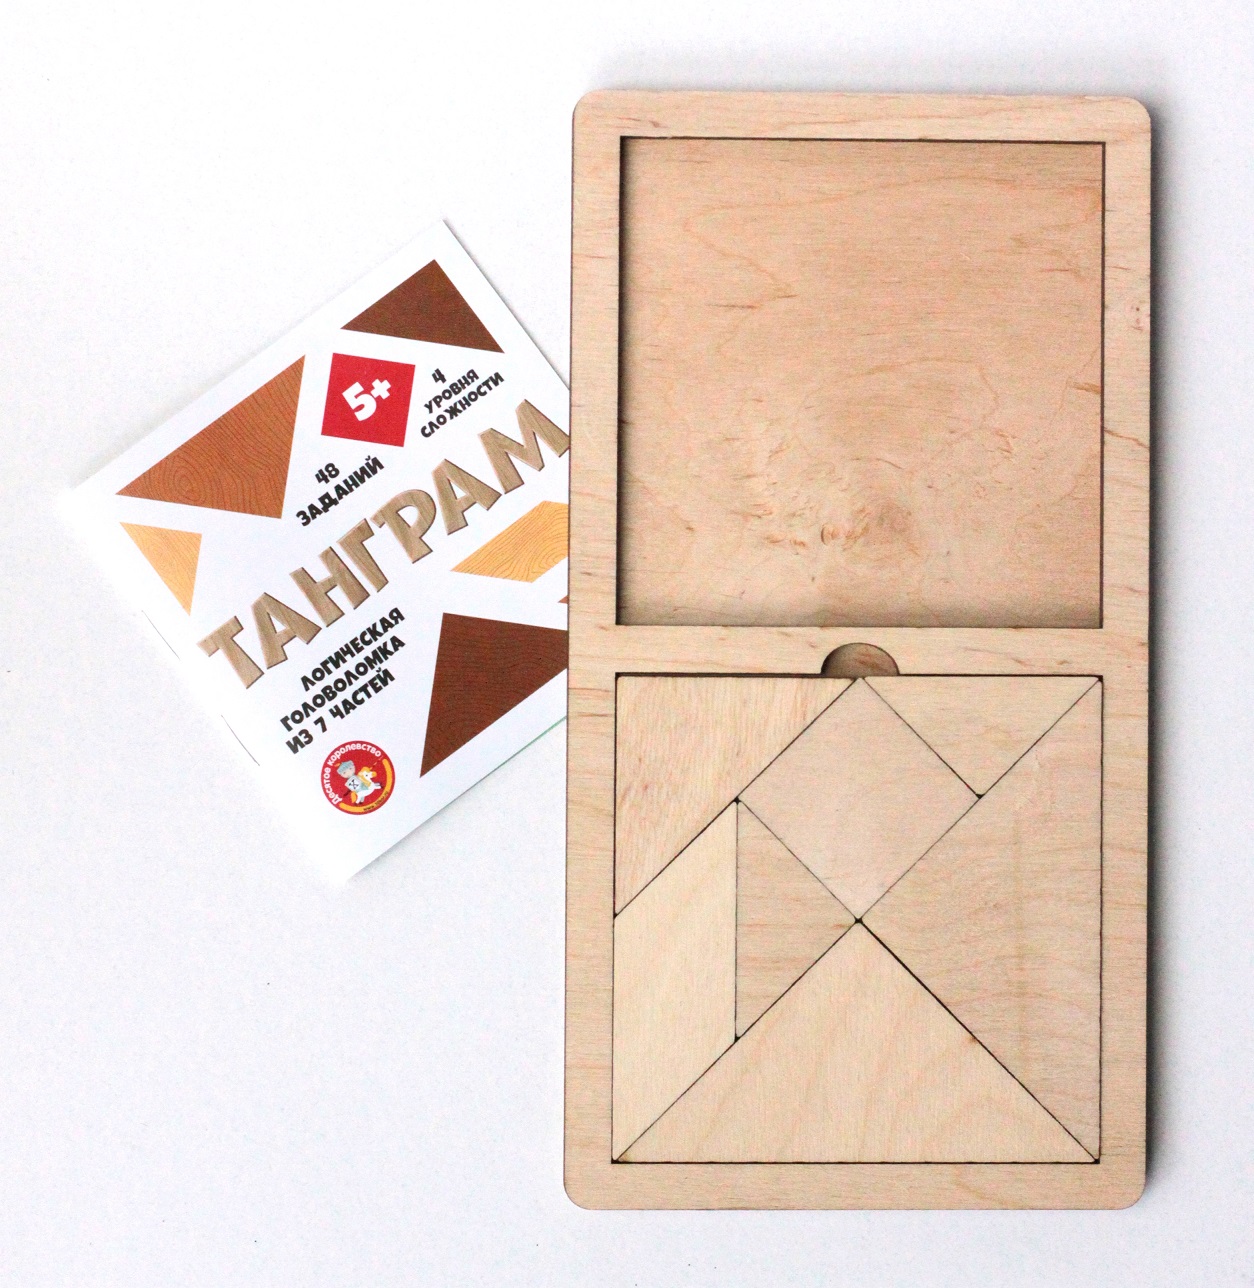 Игра головоломка деревянная – Танграм, большая  